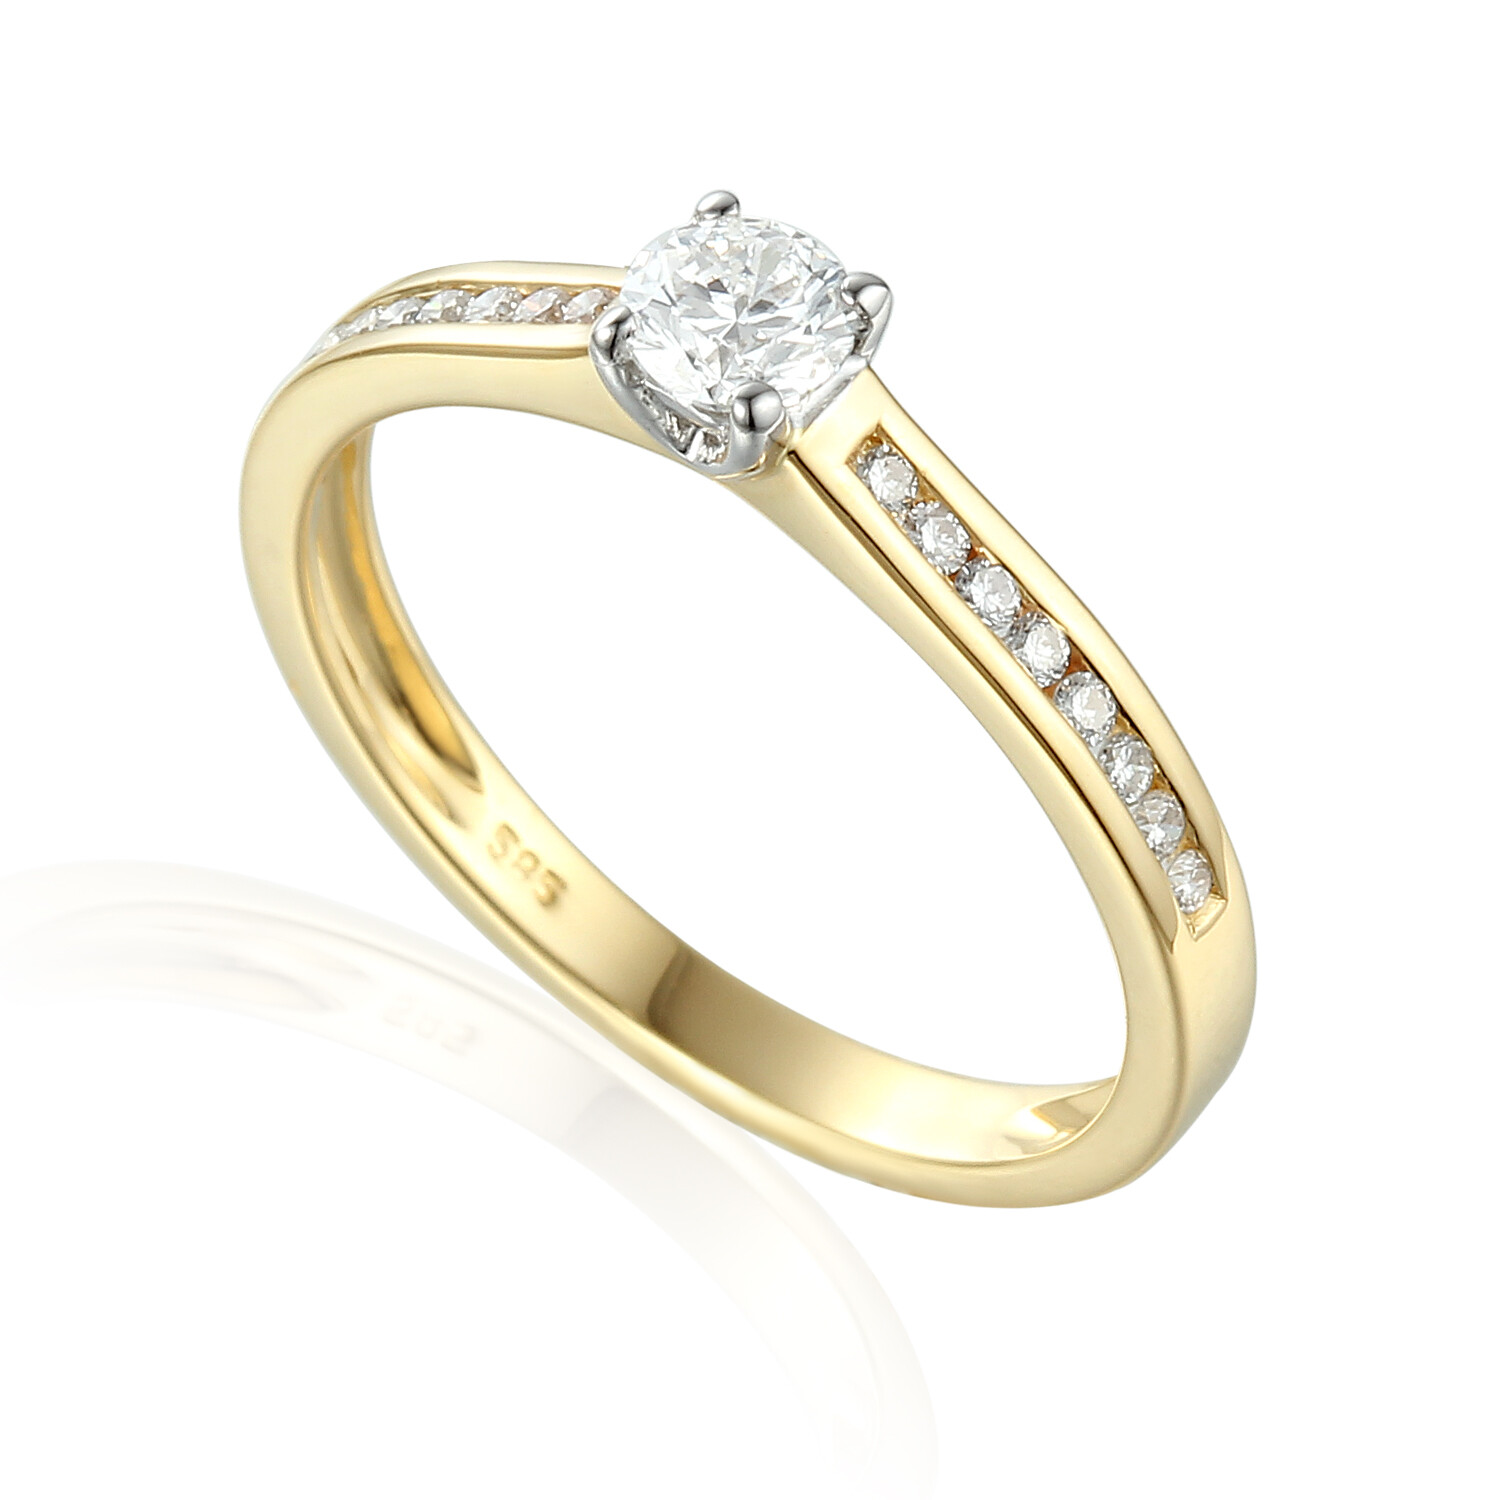 Luksusowy pierścionek zaręczynowy z białego złota z diamentami, próba 585